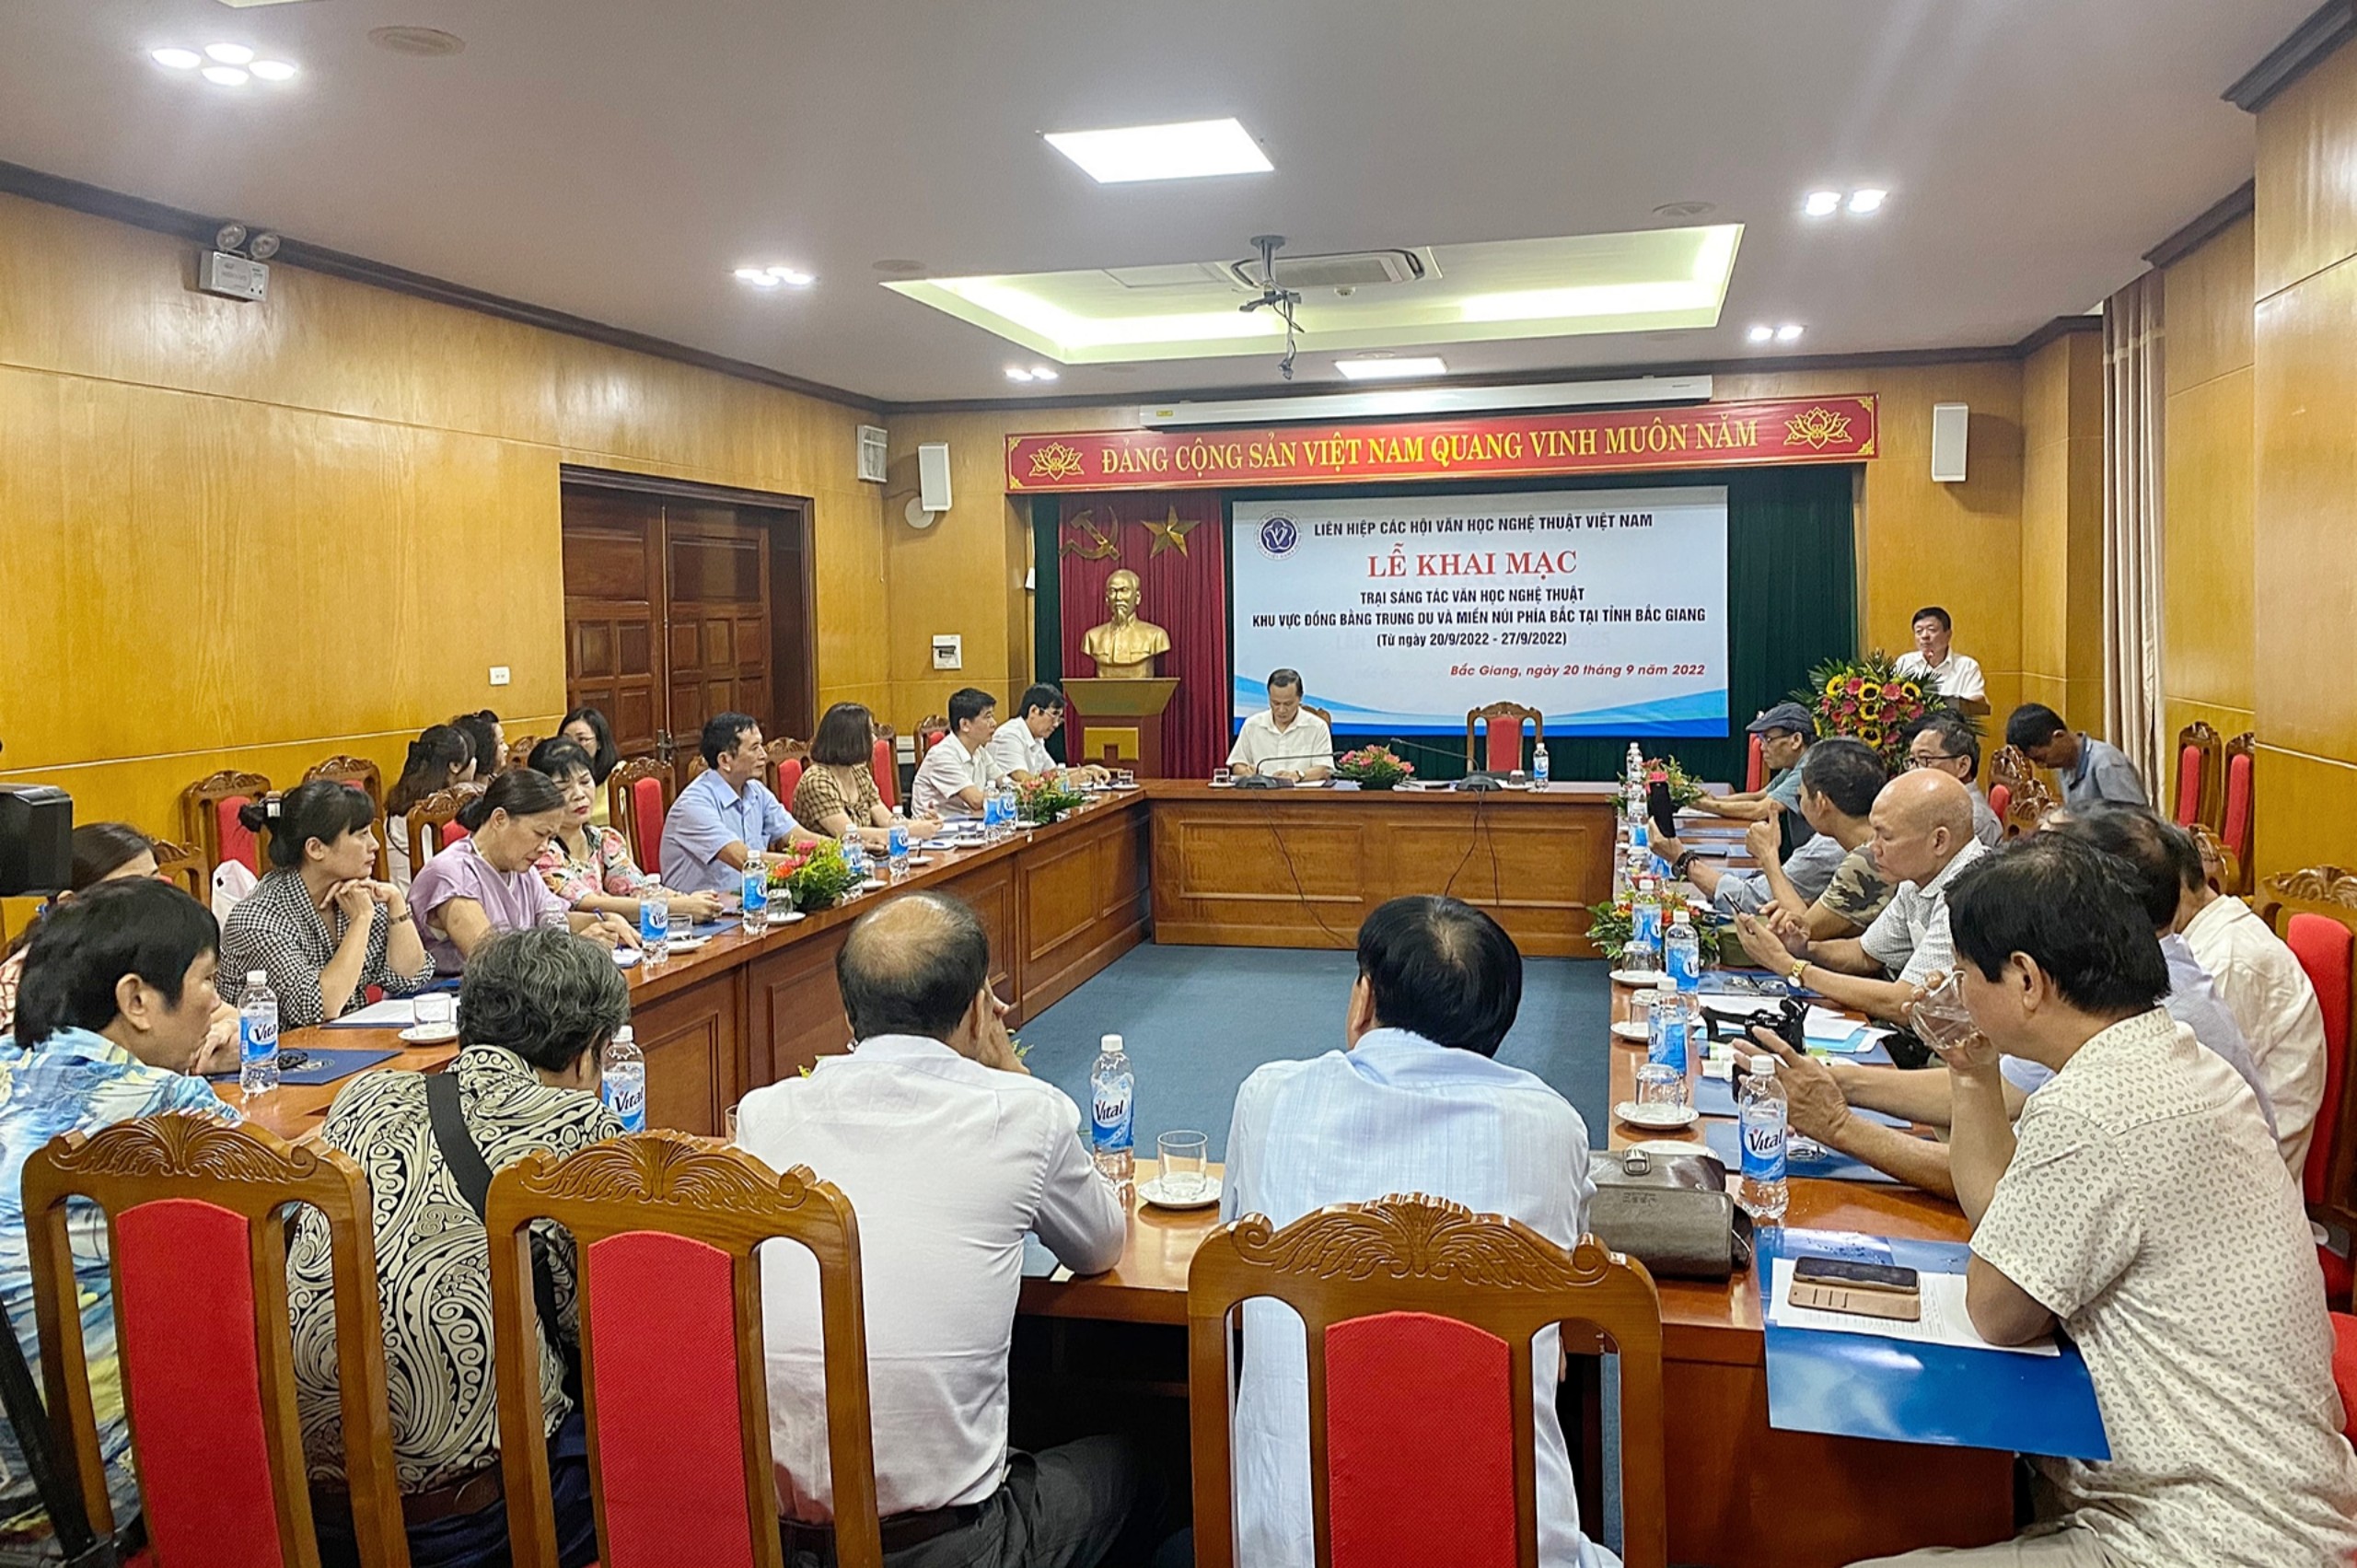 Liên hiệp các Hội Văn học nghệ thuật Việt Nam tổ chức trại sáng tác văn học nghệ thuật tại tỉnh Bắc Giang - 4